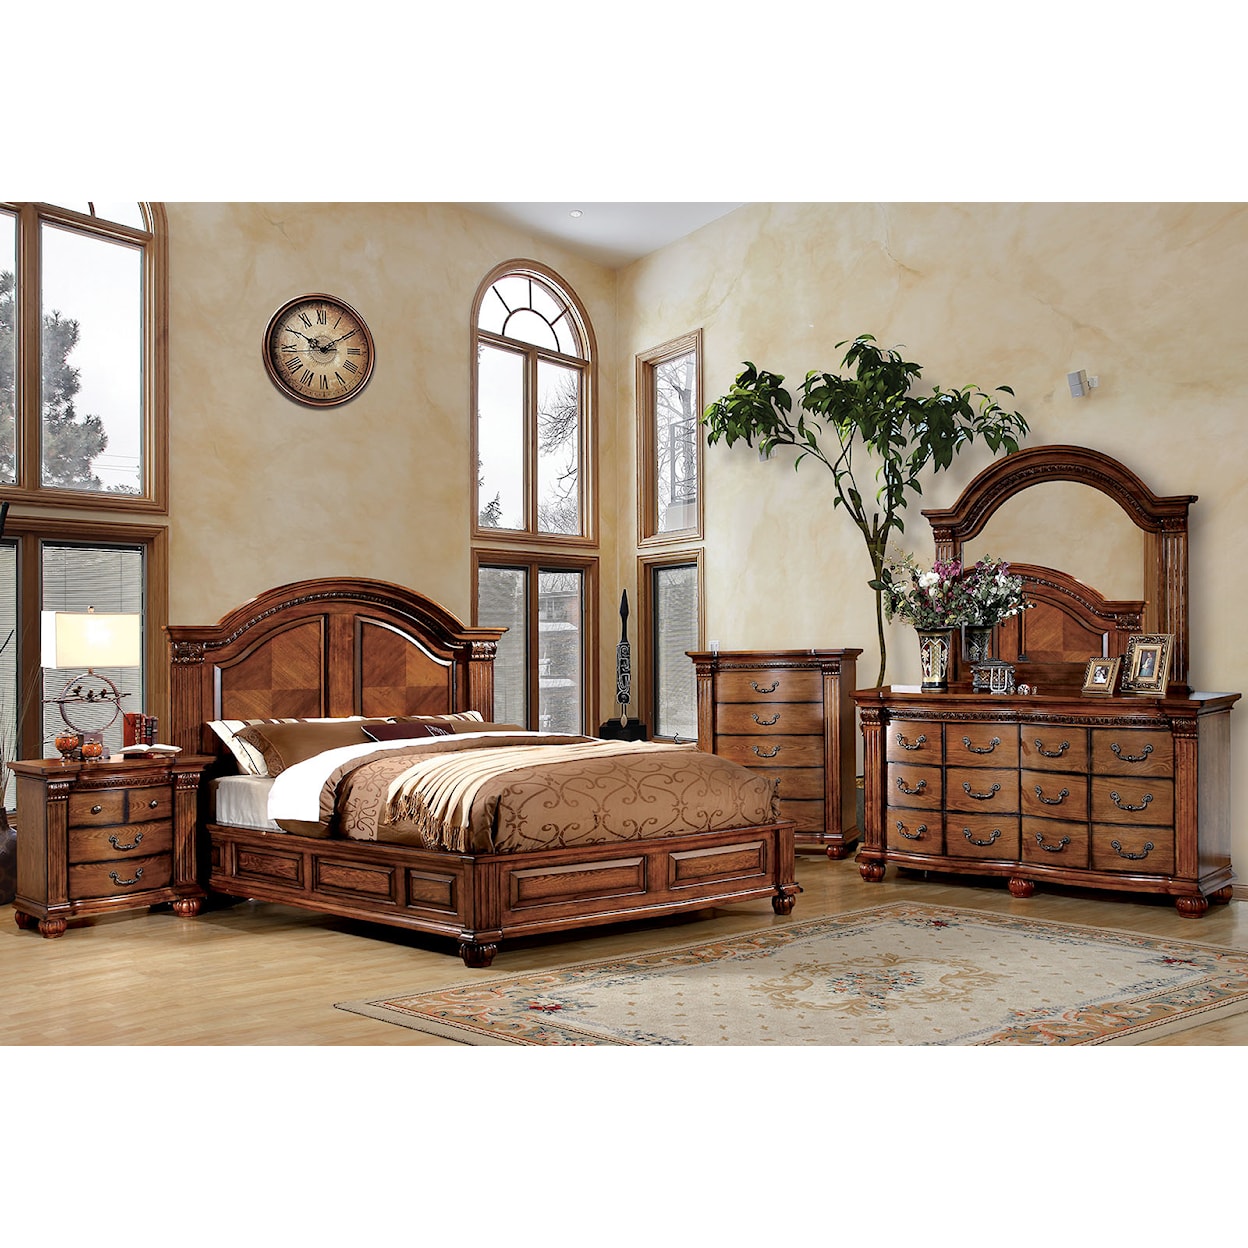 Furniture of America Bellagrand Queen Bedroom Set